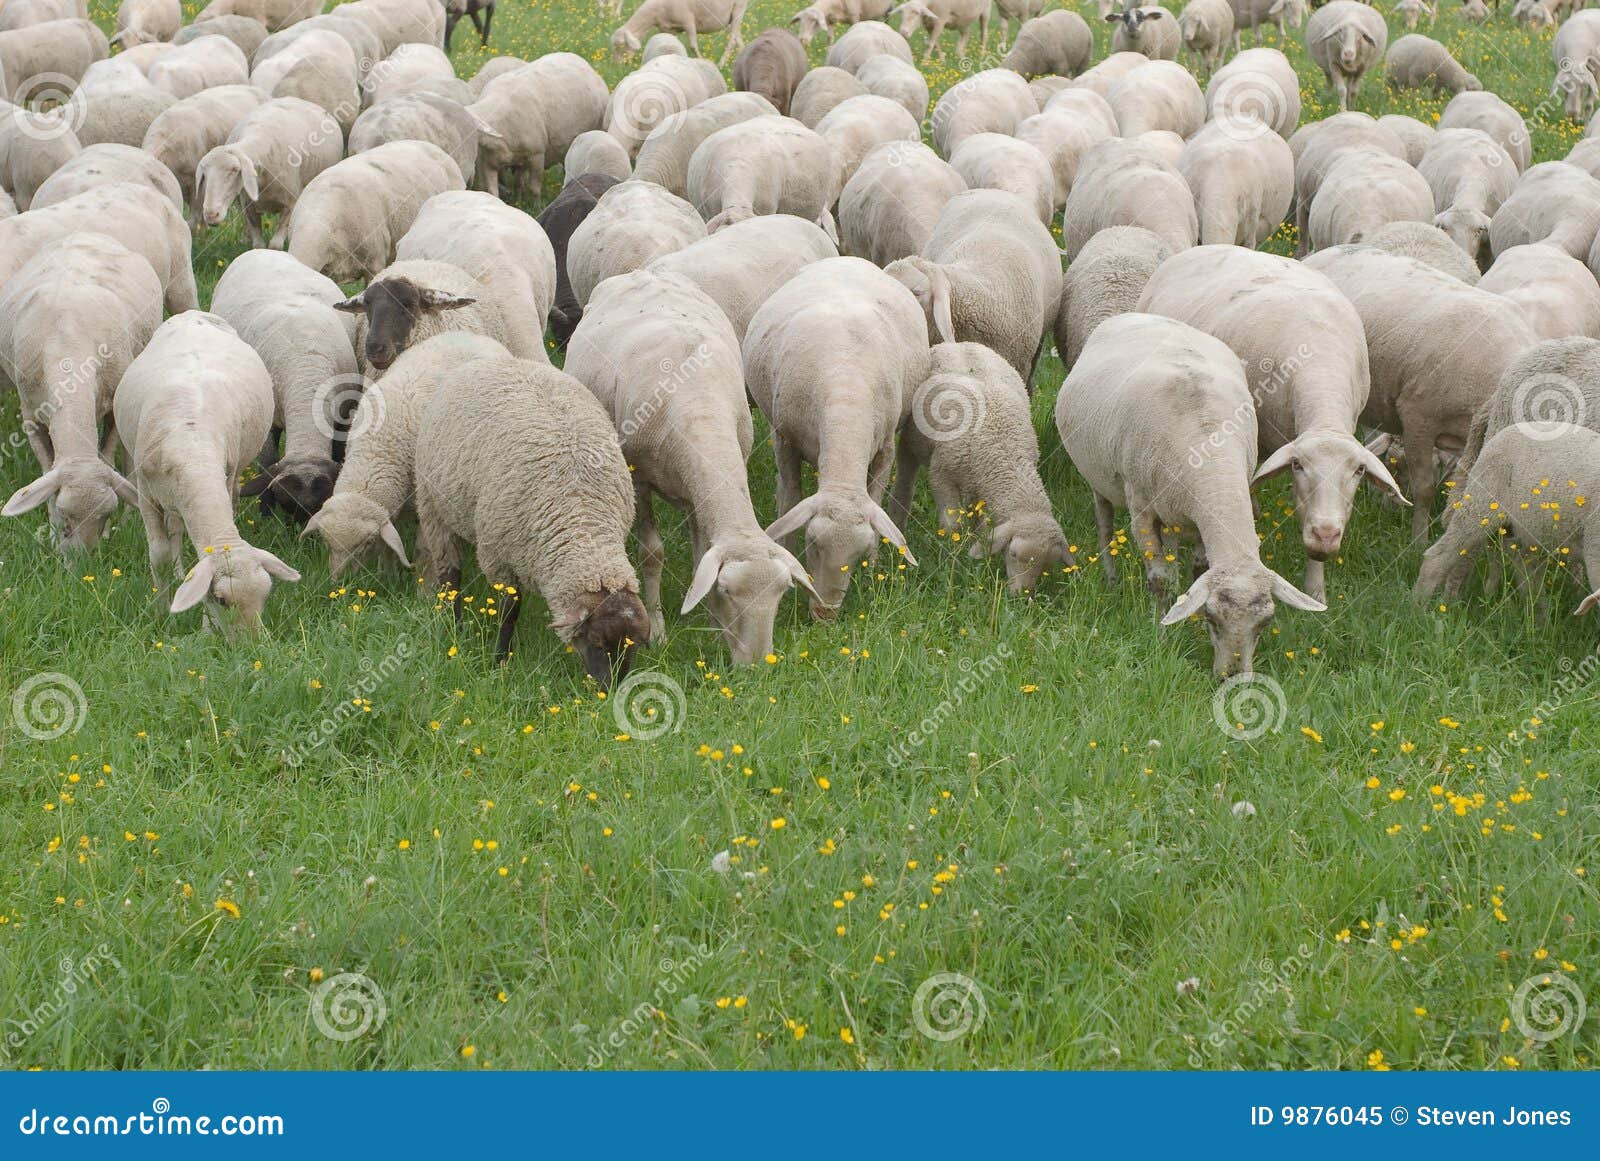 sheep grazing